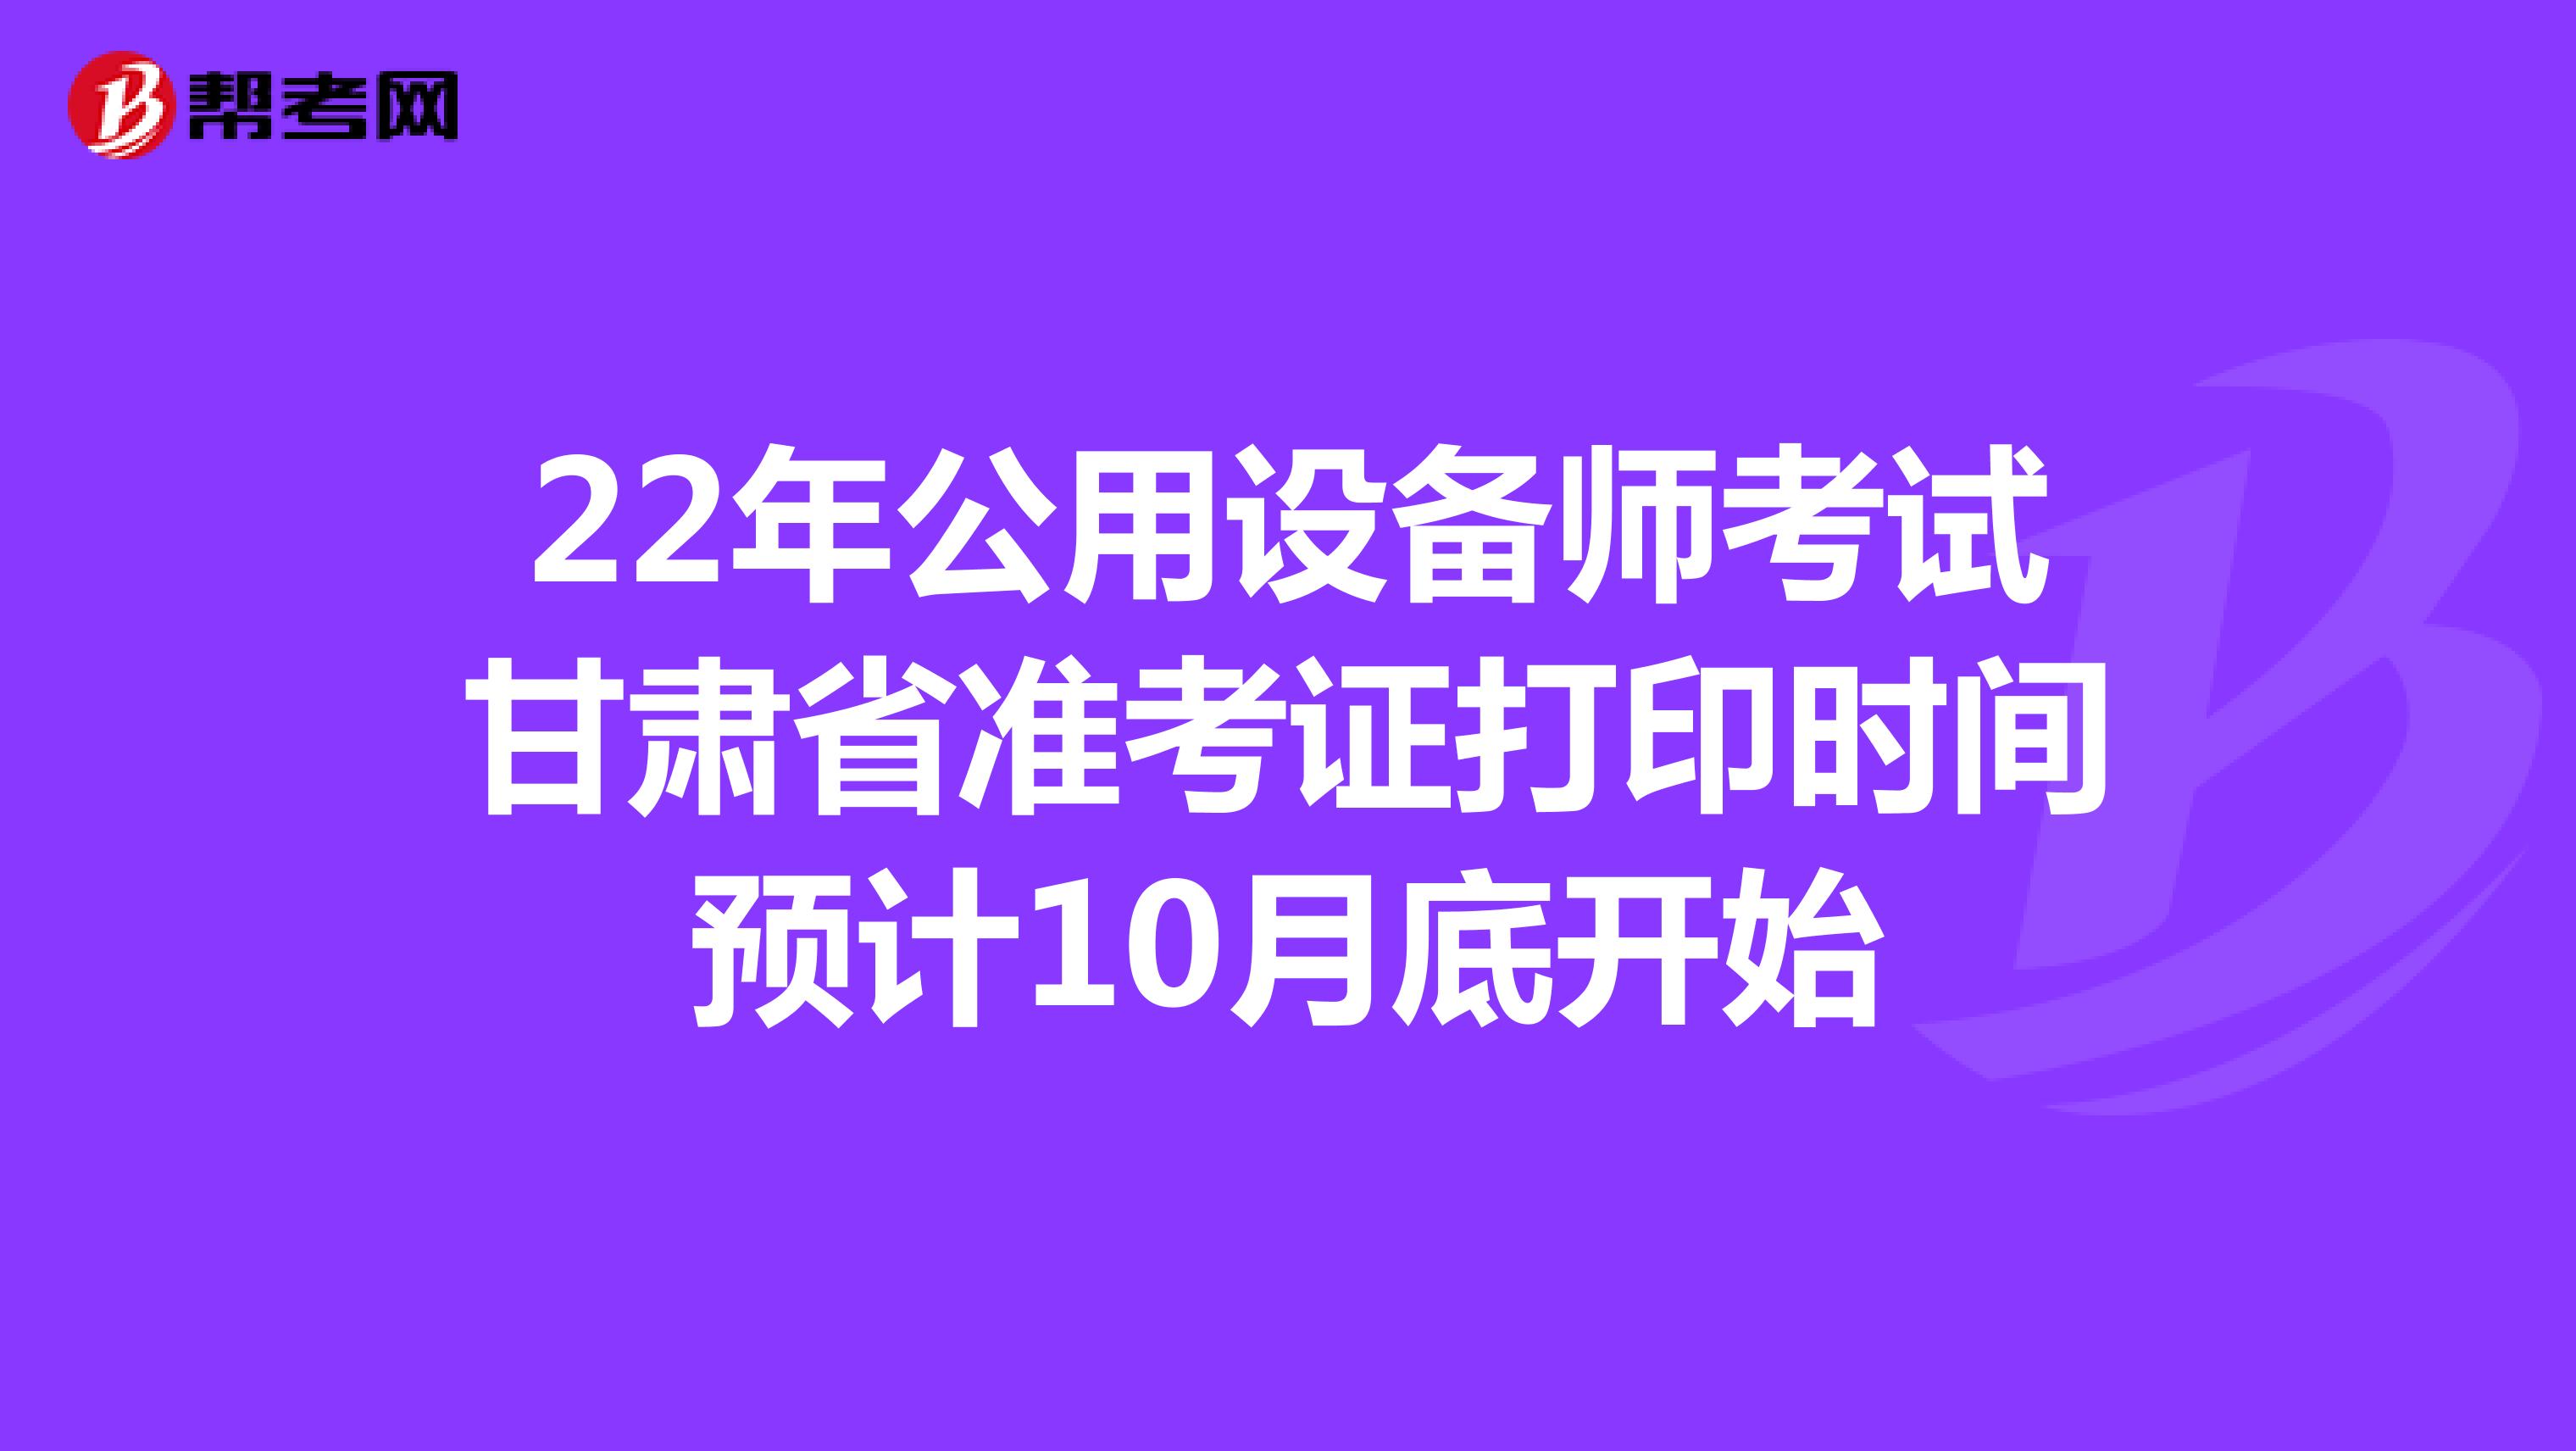 22年公用设备师考试甘肃省准考证打印时间预计10月底开始